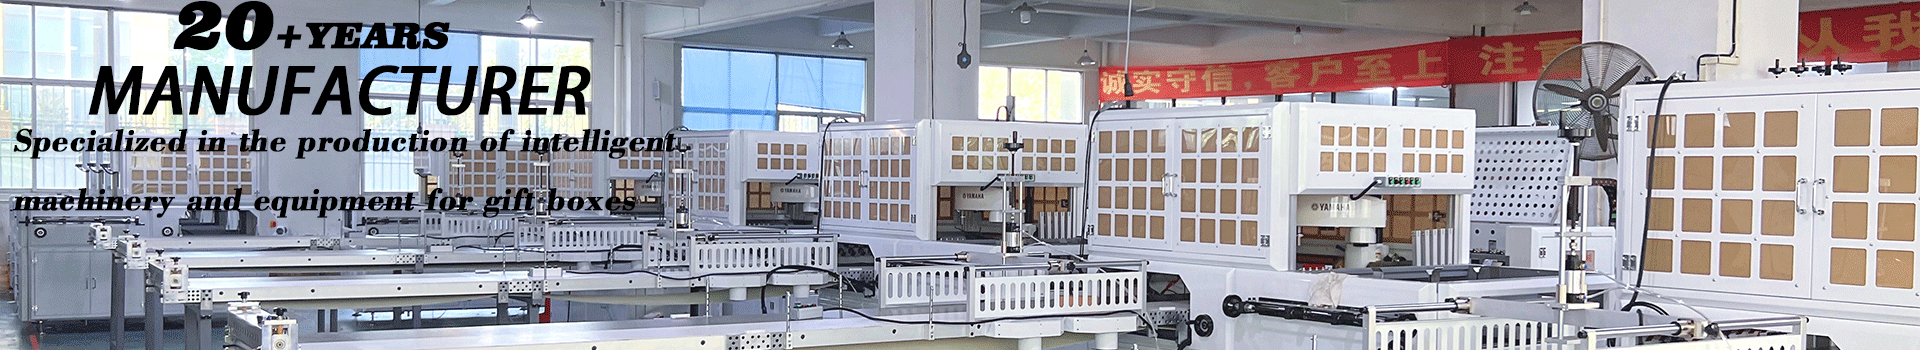 dongguan degao machinery technology co.,ltd